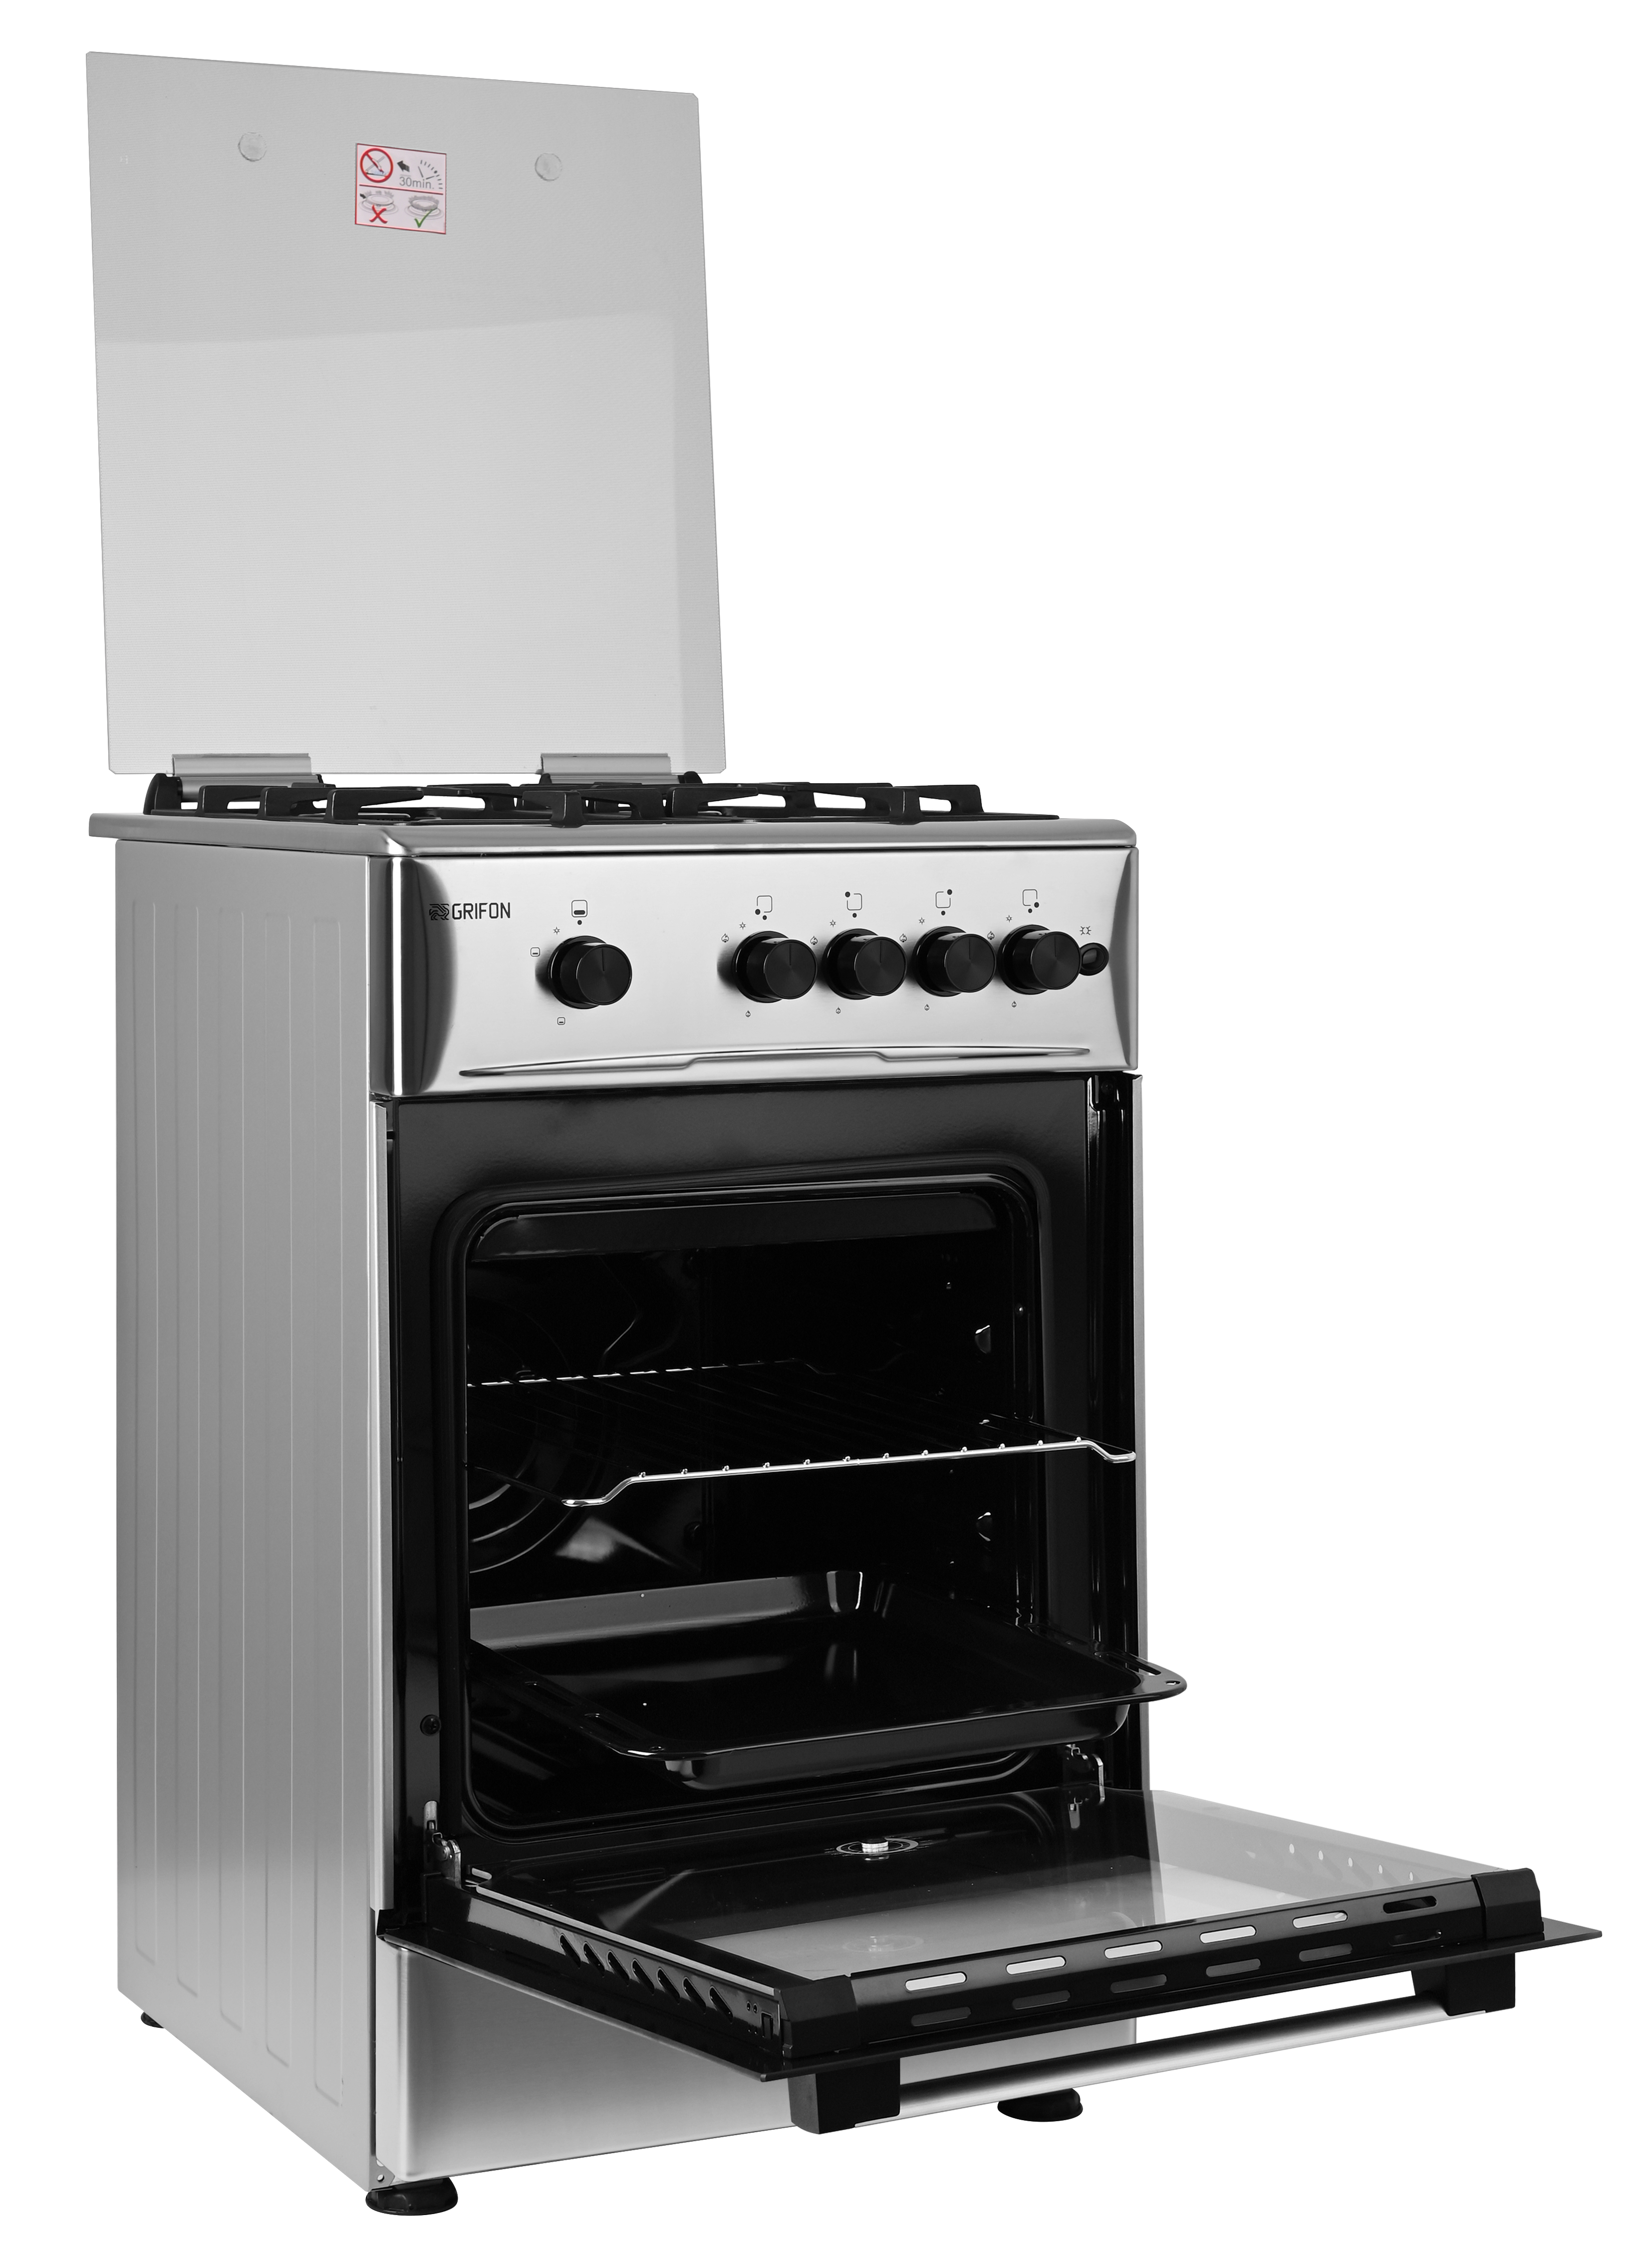 Кухонная плита Grifon G543X-CAB2 отзывы - изображения 5